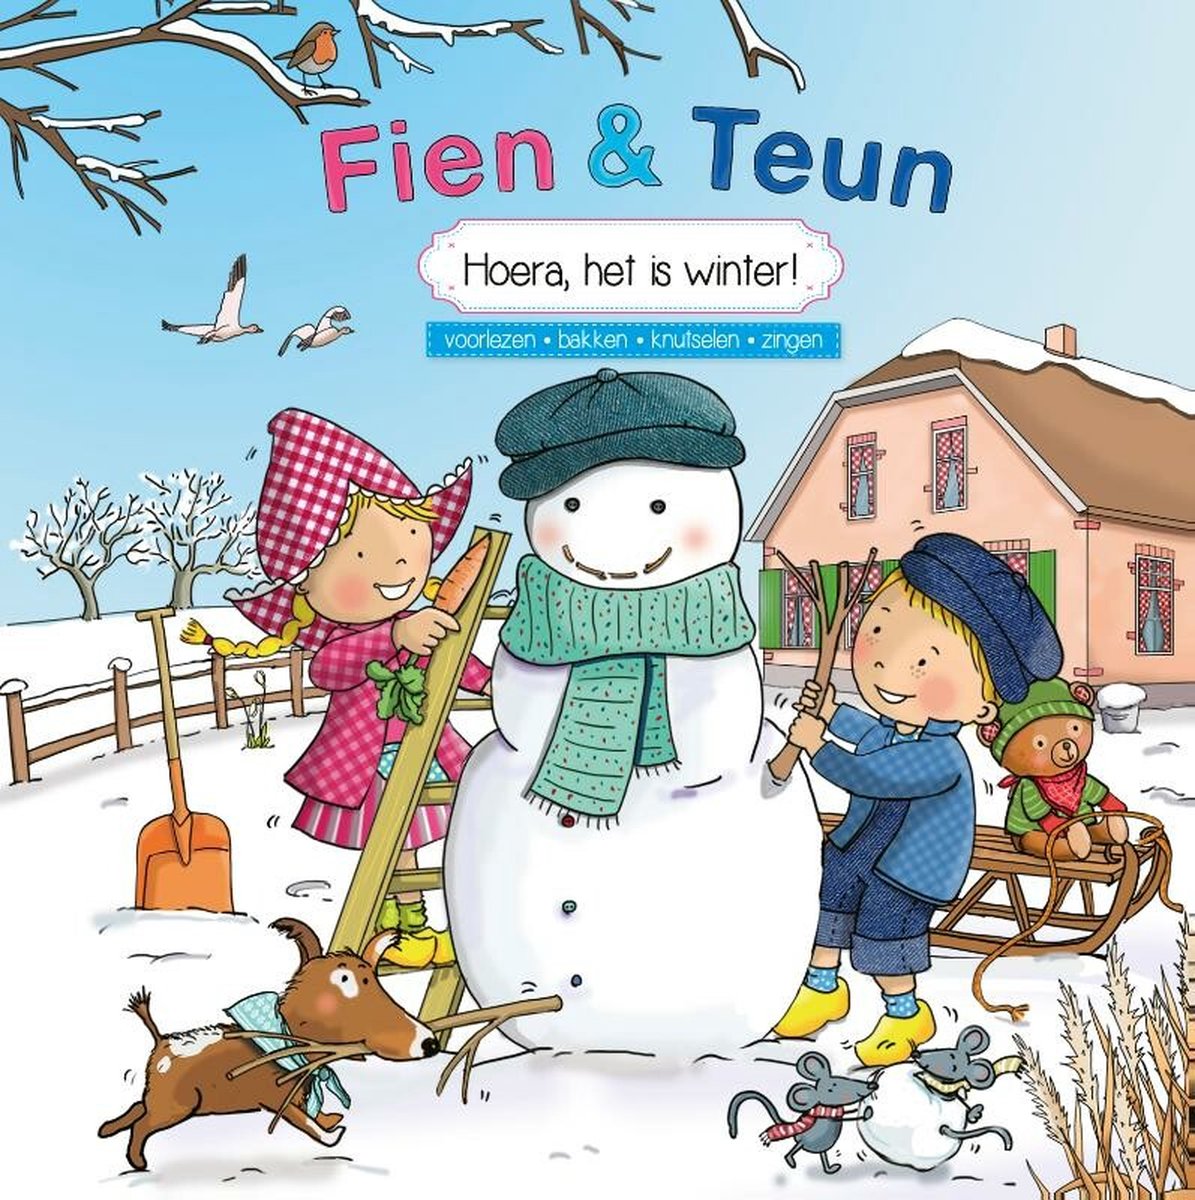 Fien & Teun - Hoera, het is winter! - voorlezen, bakken, knutselen, zingen